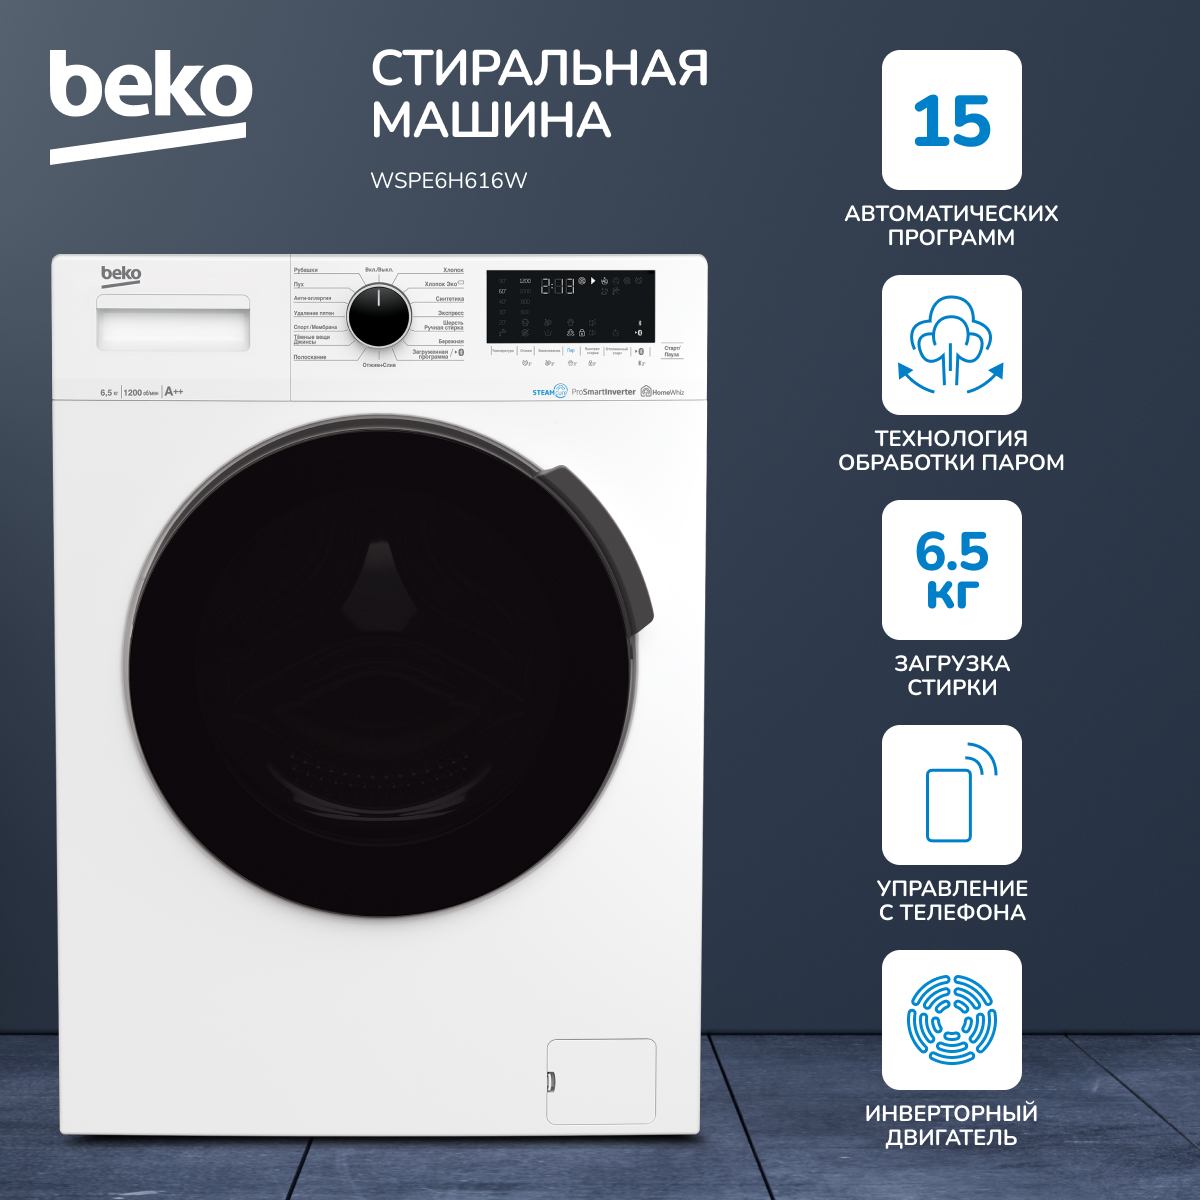 Стиральная машина Beko WSPE6H616W белый стиральная машина beko wspe6h616w белая мешок для стирки белья